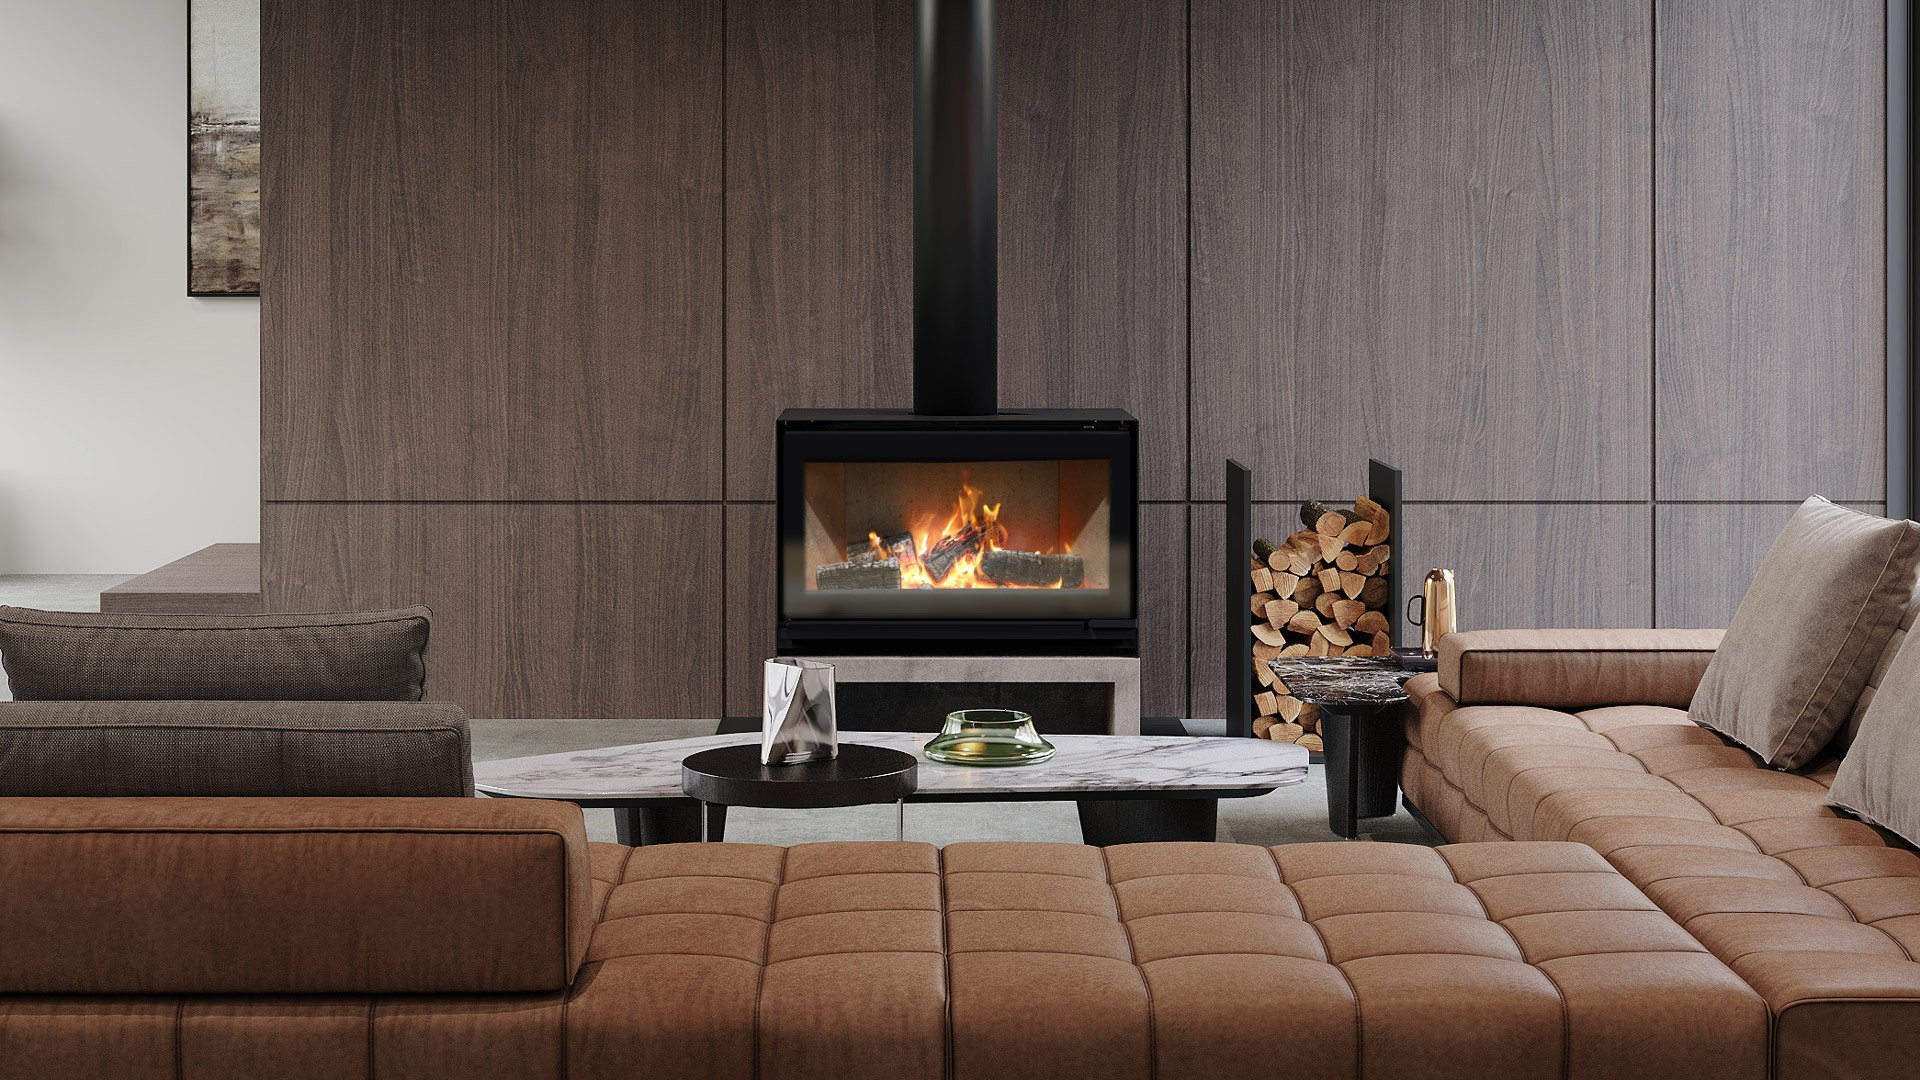 Escea TFS650 Freestanding Wood Fireplace